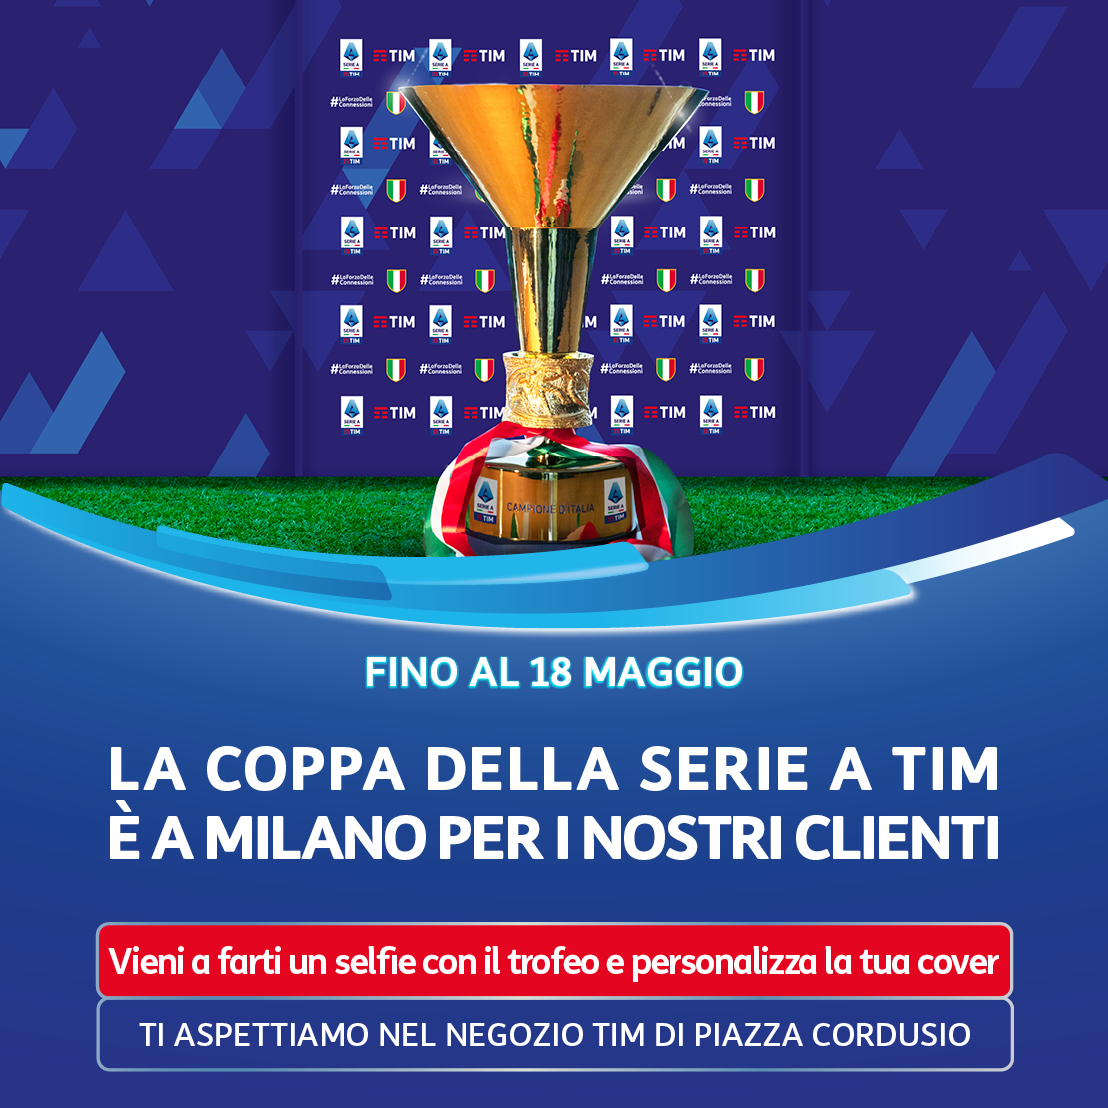 📣 Da oggi fino al 18/05, TIM ospiterà in esclusiva la Coppa della #SerieATIM nello Store di Milano in piazza Cordusio. 🤩🏆 Il trofeo, conquistato dall'@Inter, sarà a disposizione di tutti coloro che vorranno passare per fare una foto. 🤳 @SerieA #LaForzaDelleConnessioni